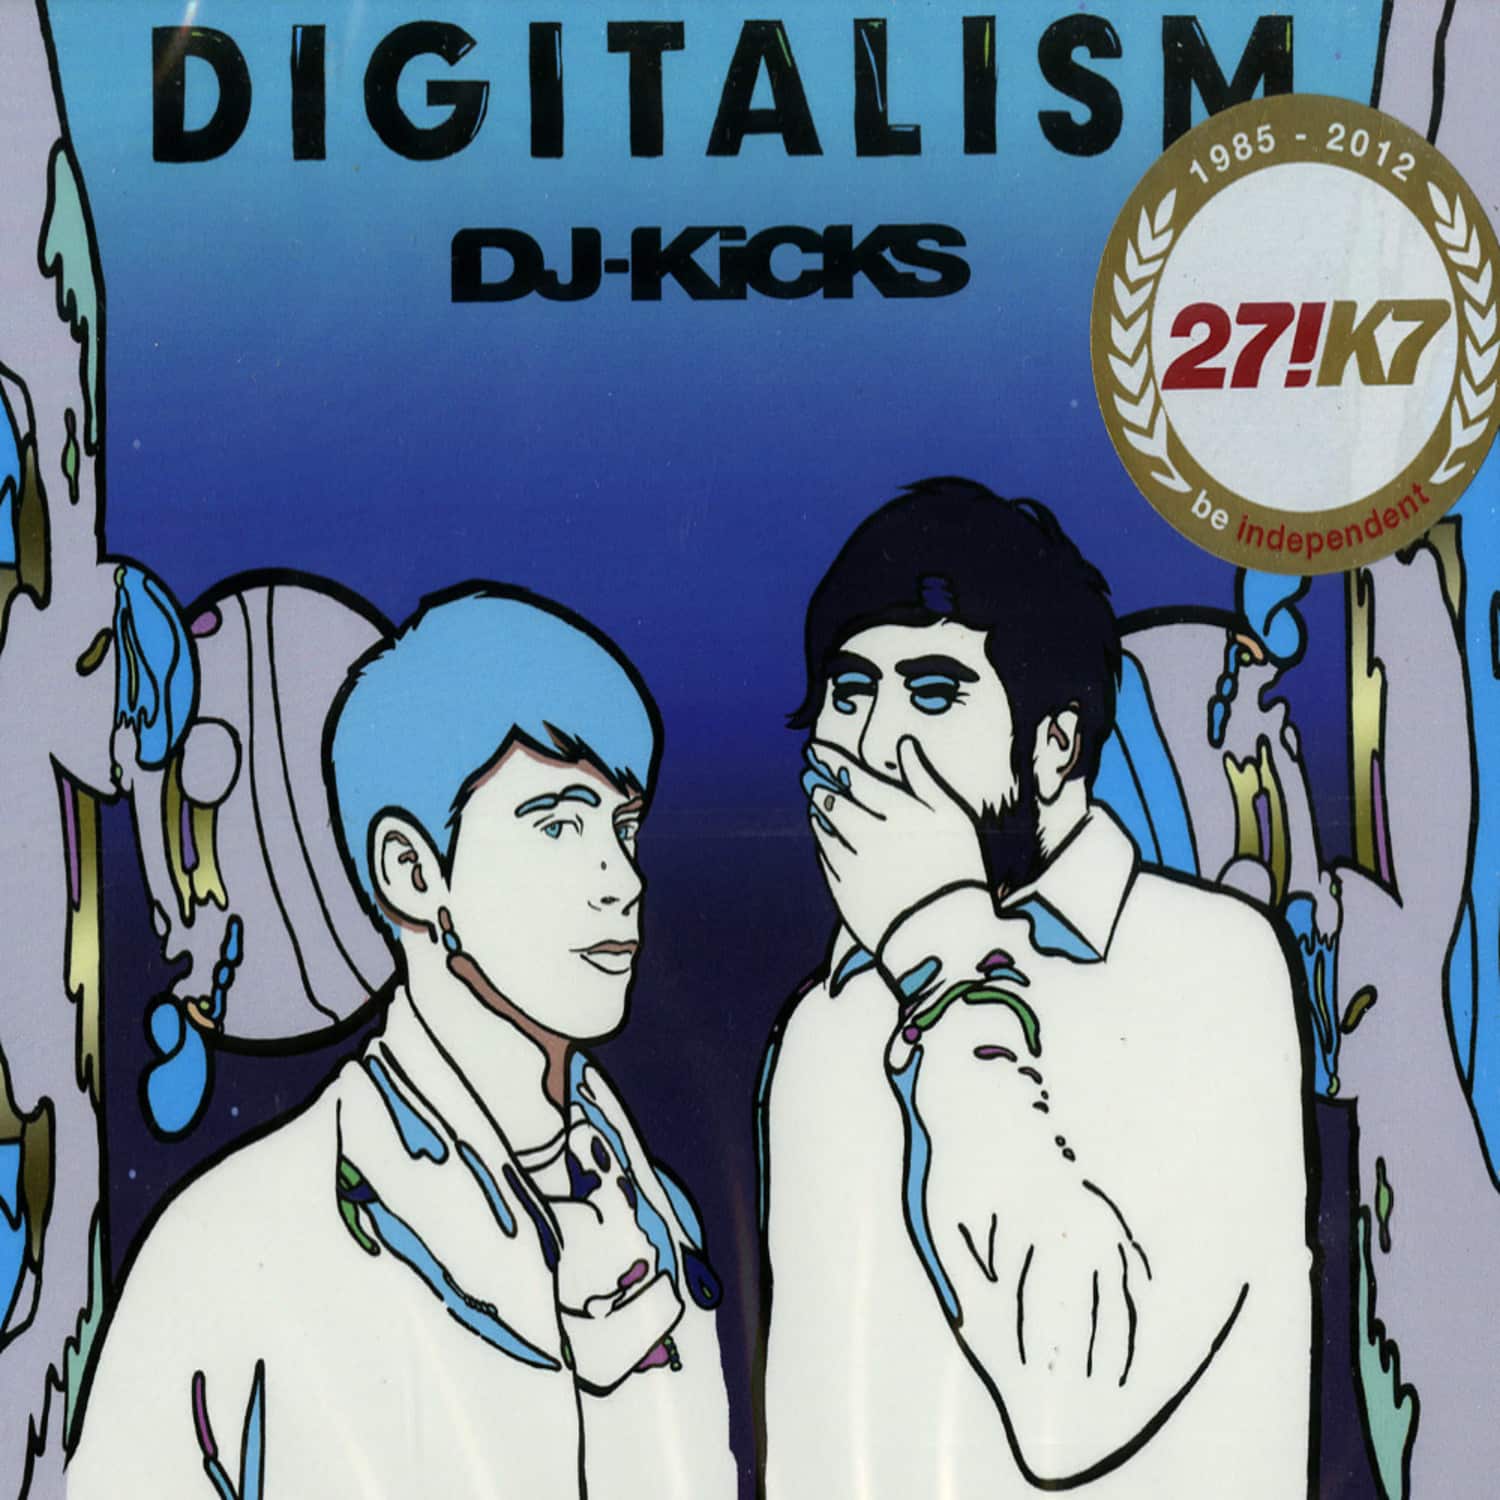 Digitalism - DJ KICKS 